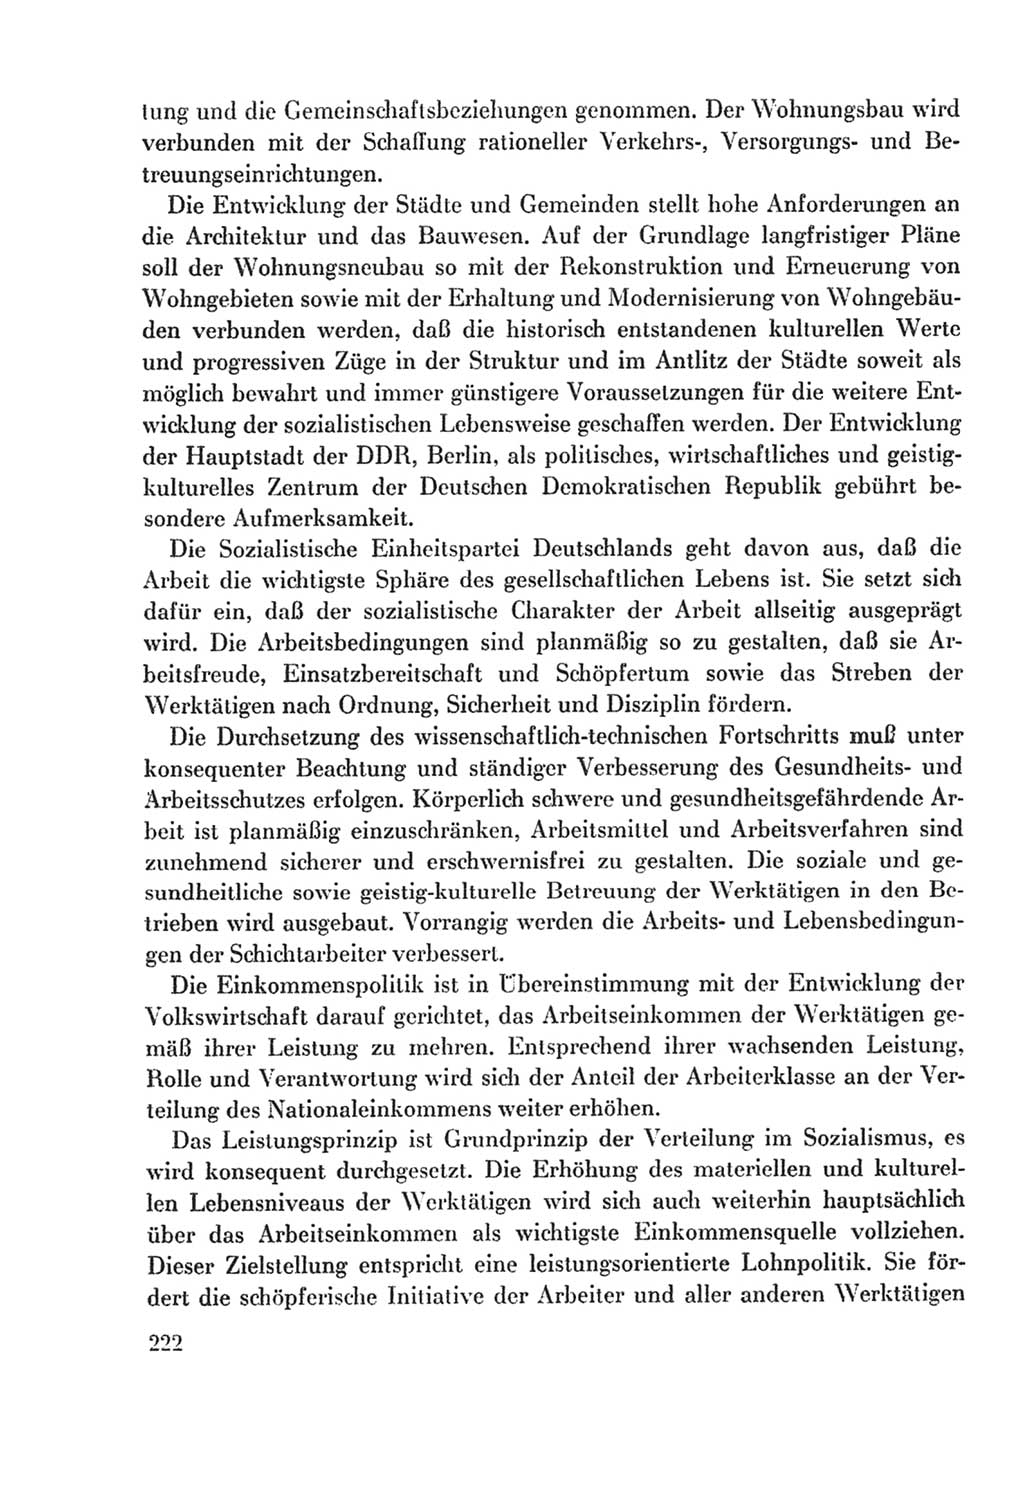 Protokoll der Verhandlungen des Ⅸ. Parteitages der Sozialistischen Einheitspartei Deutschlands (SED) [Deutsche Demokratische Republik (DDR)] 1976, Band 2, Seite 222 (Prot. Verh. Ⅸ. PT SED DDR 1976, Bd. 2, S. 222)